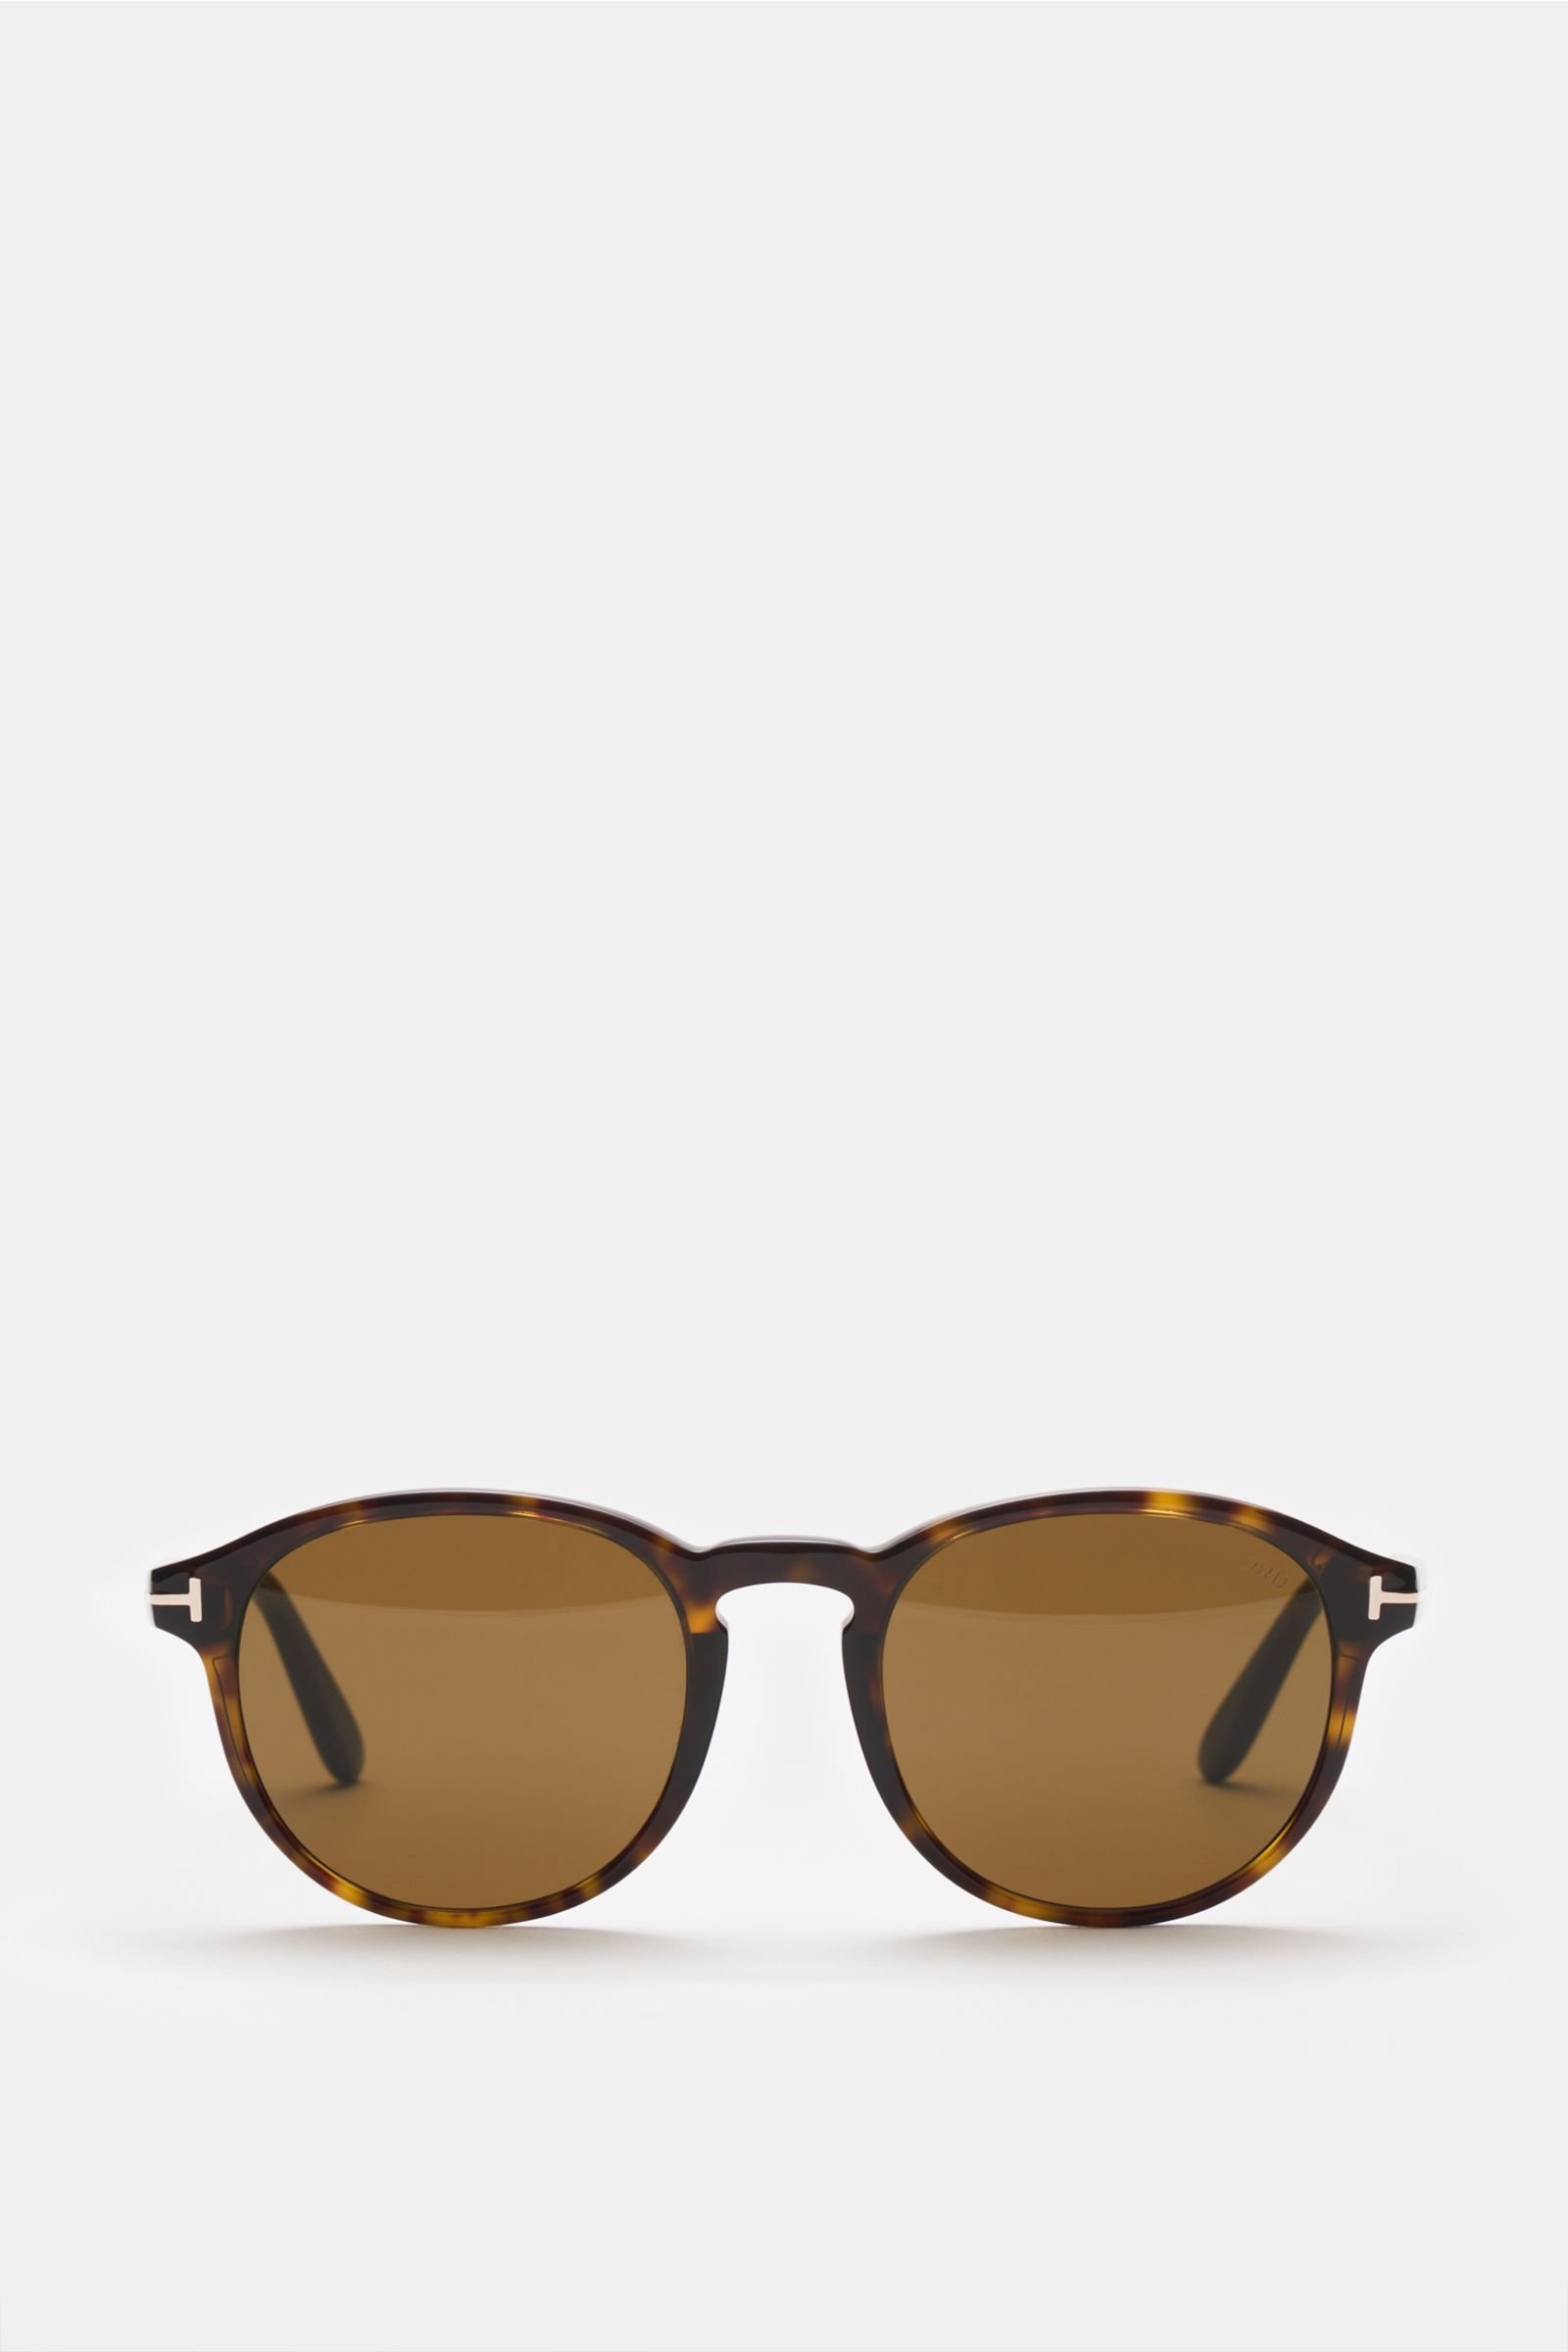 Sunglasses 'Dante' dark brown patterned/brown